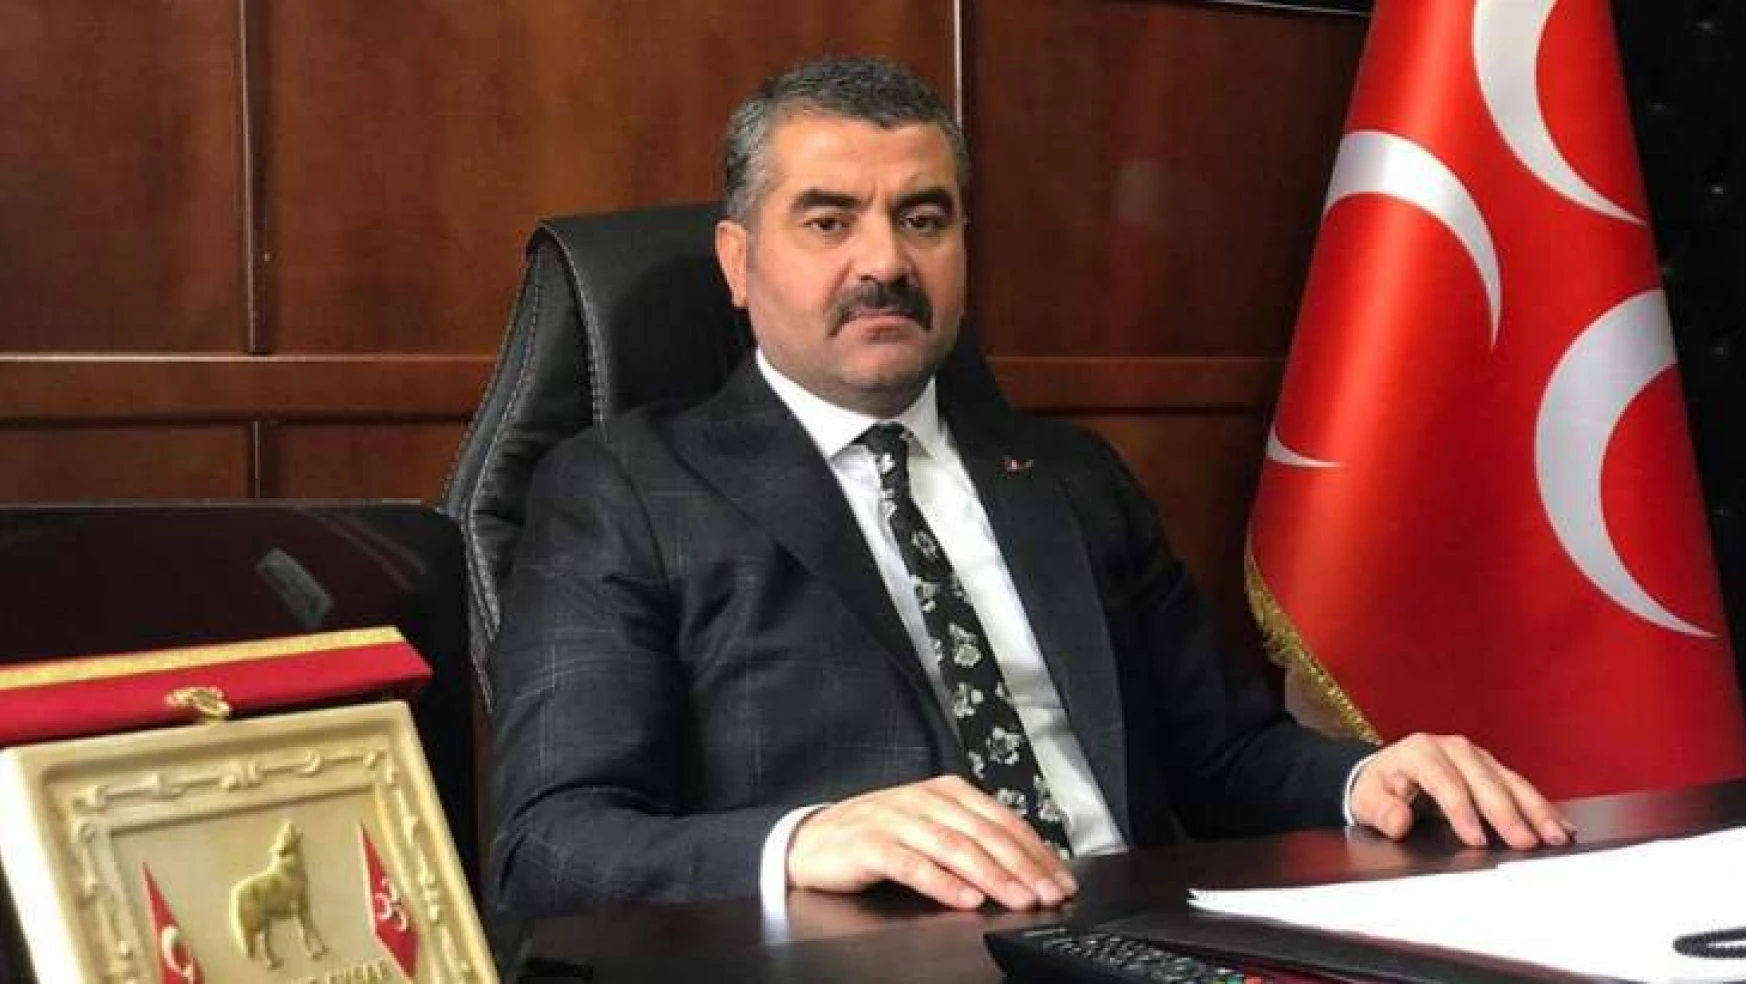 MHP'li Avşar, 'Kötü Günler El Birliği İle Aşılacaktır'